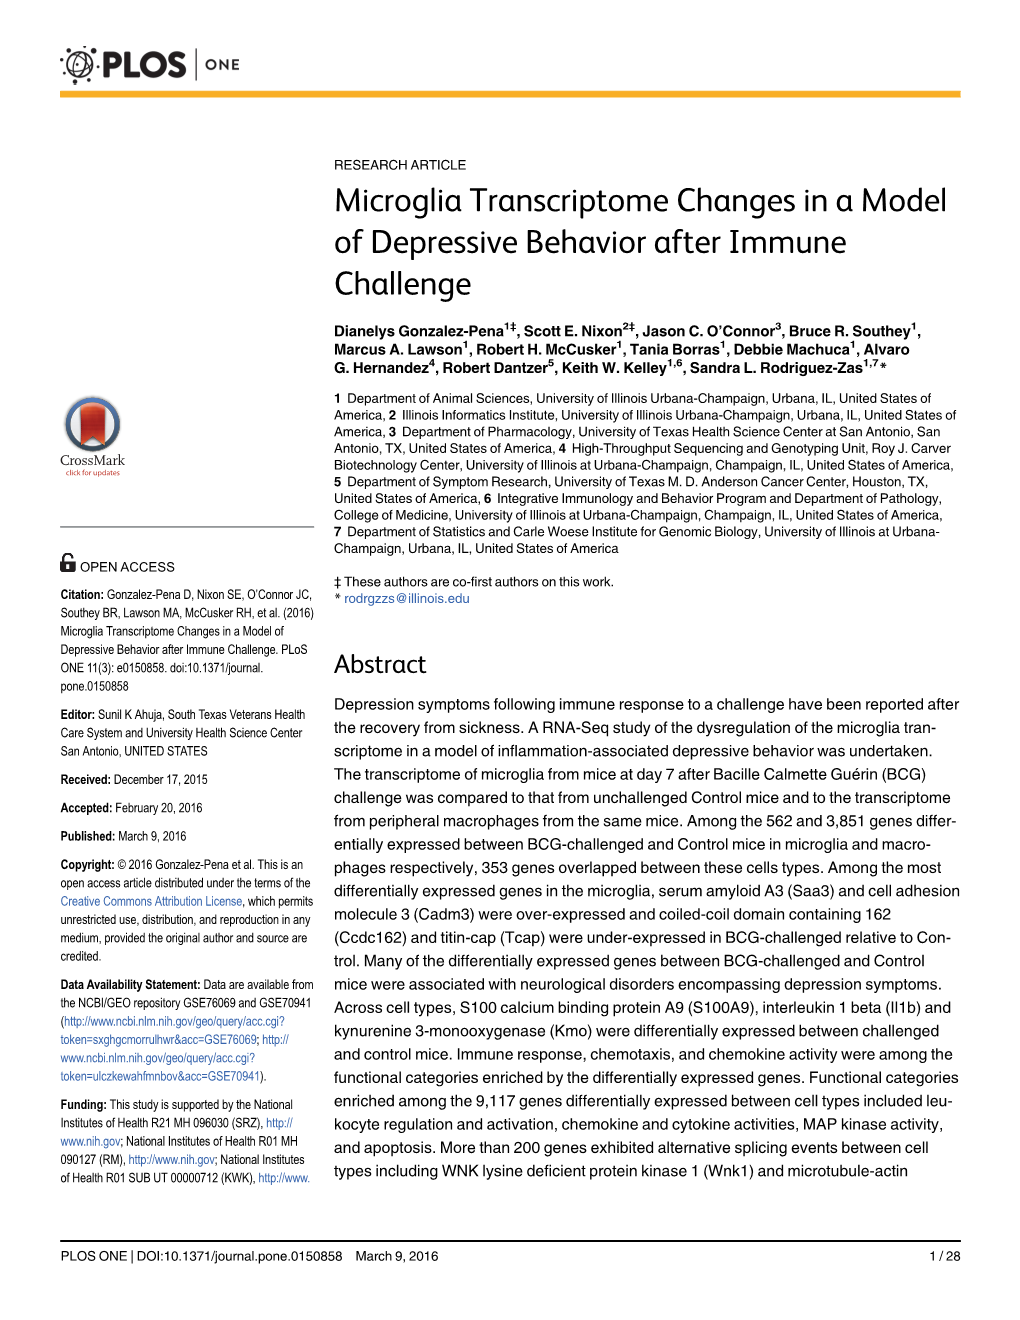 Microglia Transcriptome Changes in a Model of Depressive Behavior After Immune Challenge